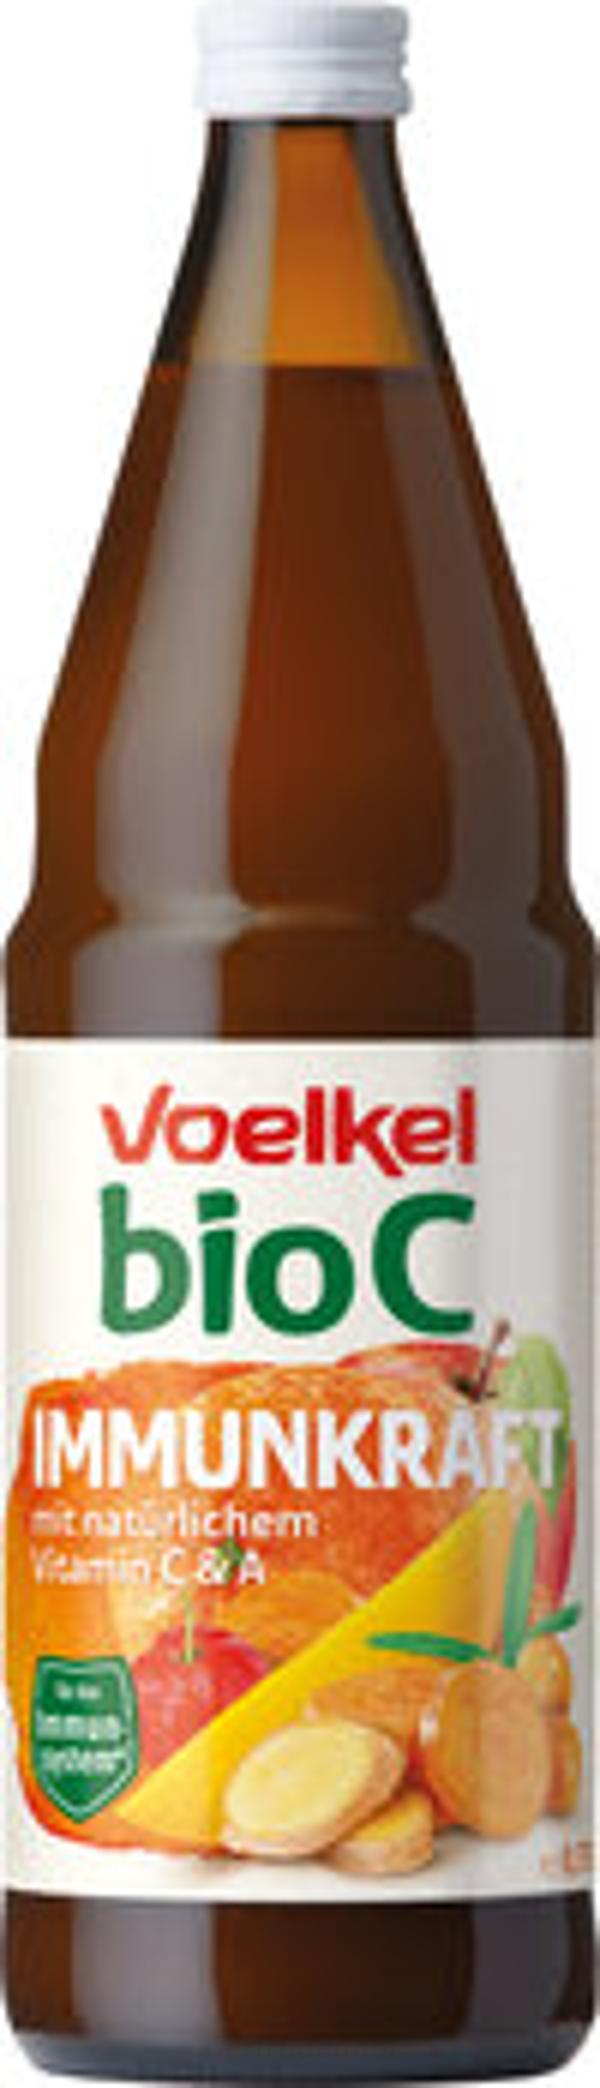 Produktfoto zu bio C Immunkraft 0,75 l (VOE)